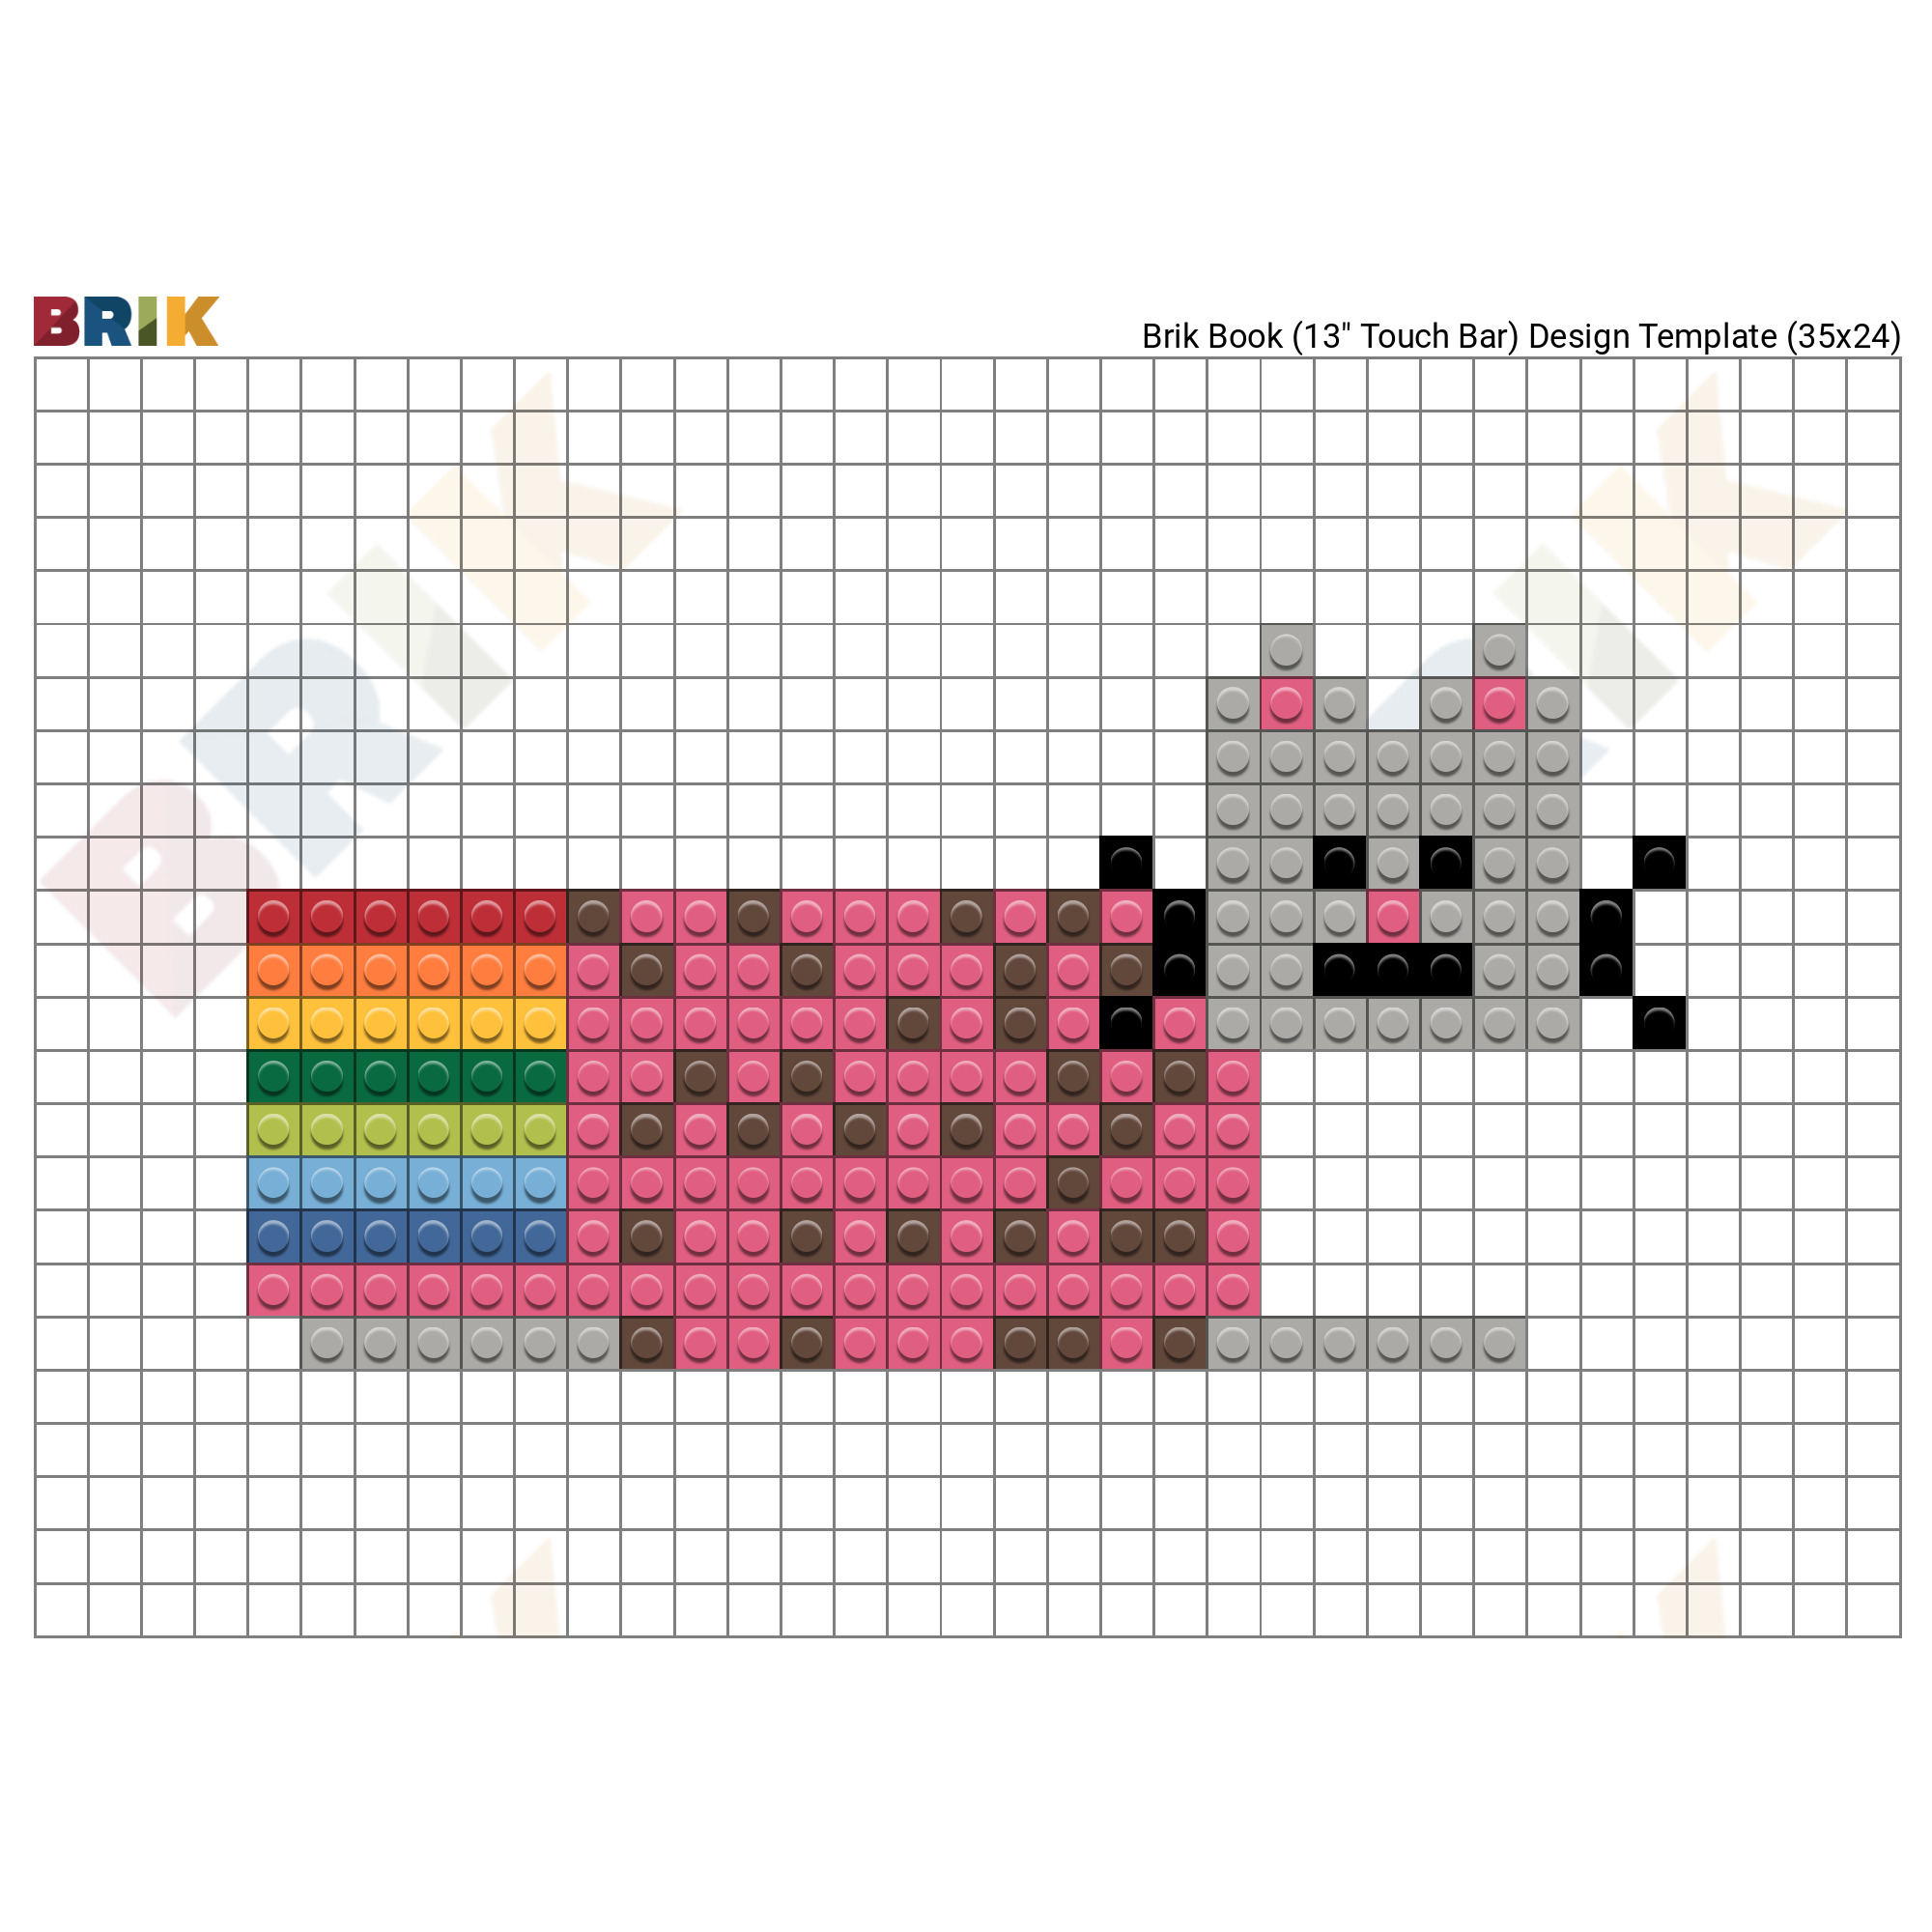 Nyan Cat – BRIK